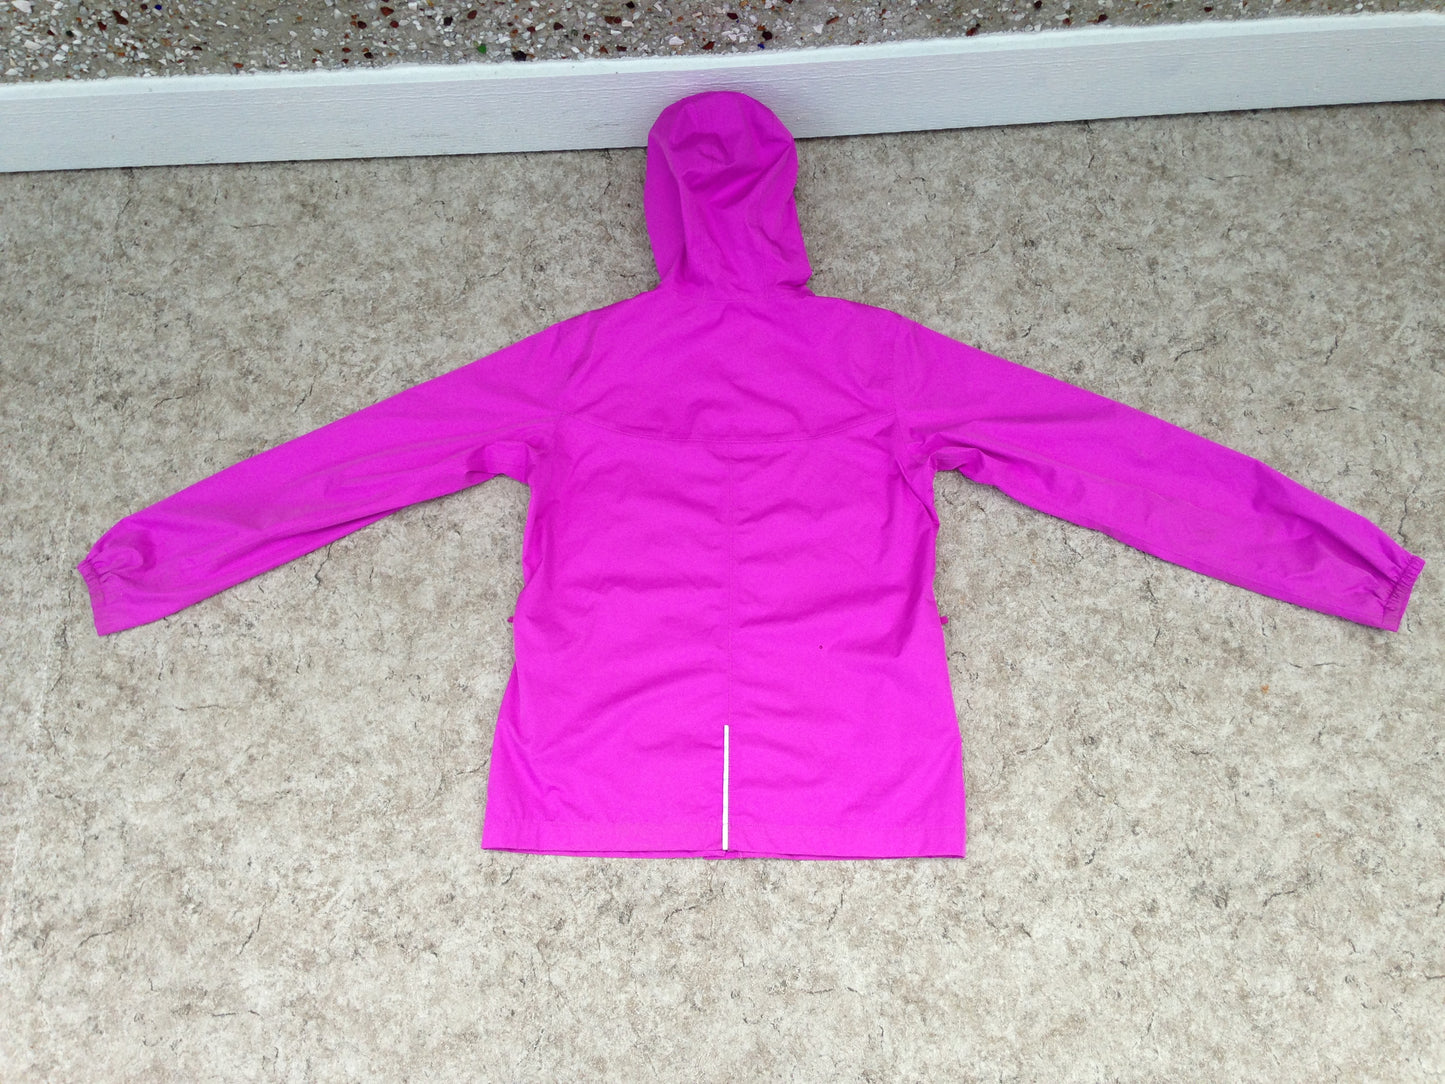 Rain Coat Child Size 16 MEC Waterproof Peony Pink Excellent